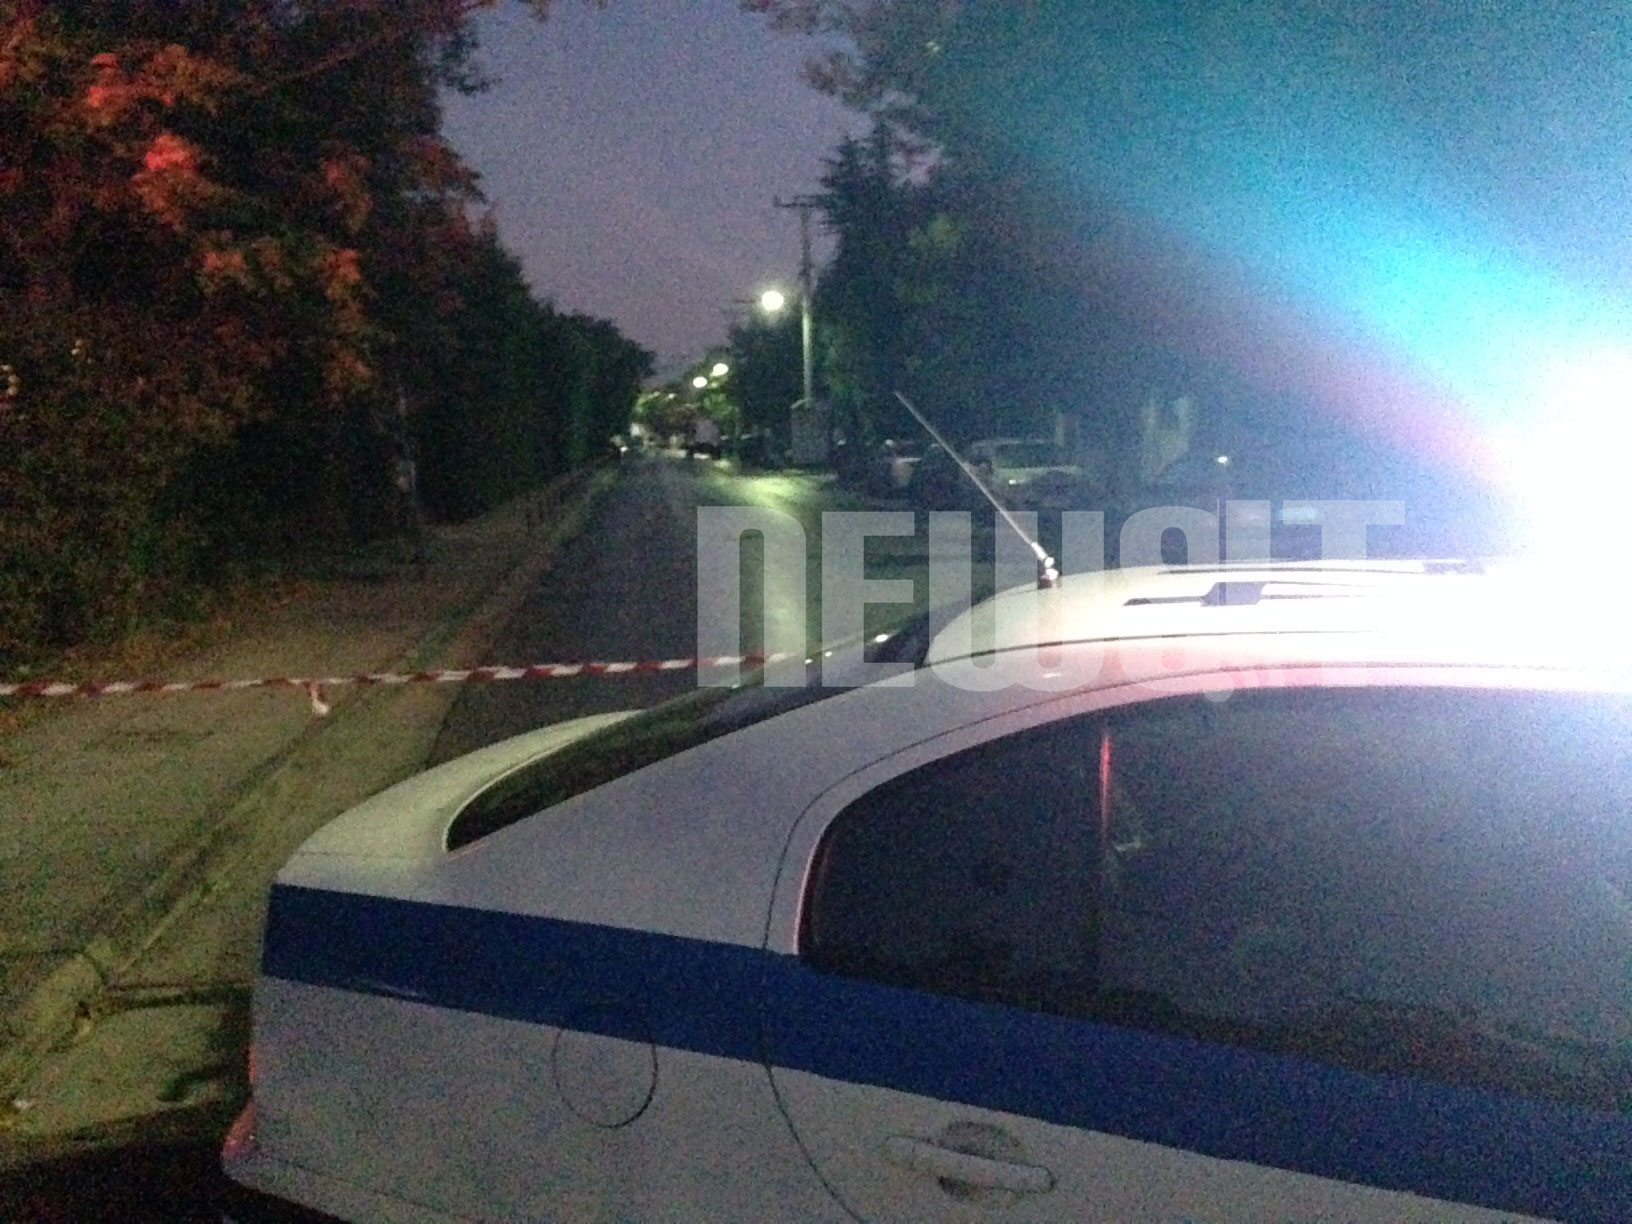 Αστυνομία και ΤΕΕΜ έσπευσαν στο σημείο αλλά δεν πρόλαβαν - ΦΩΤΟΓΡΑΦΙΑ NEWSIT